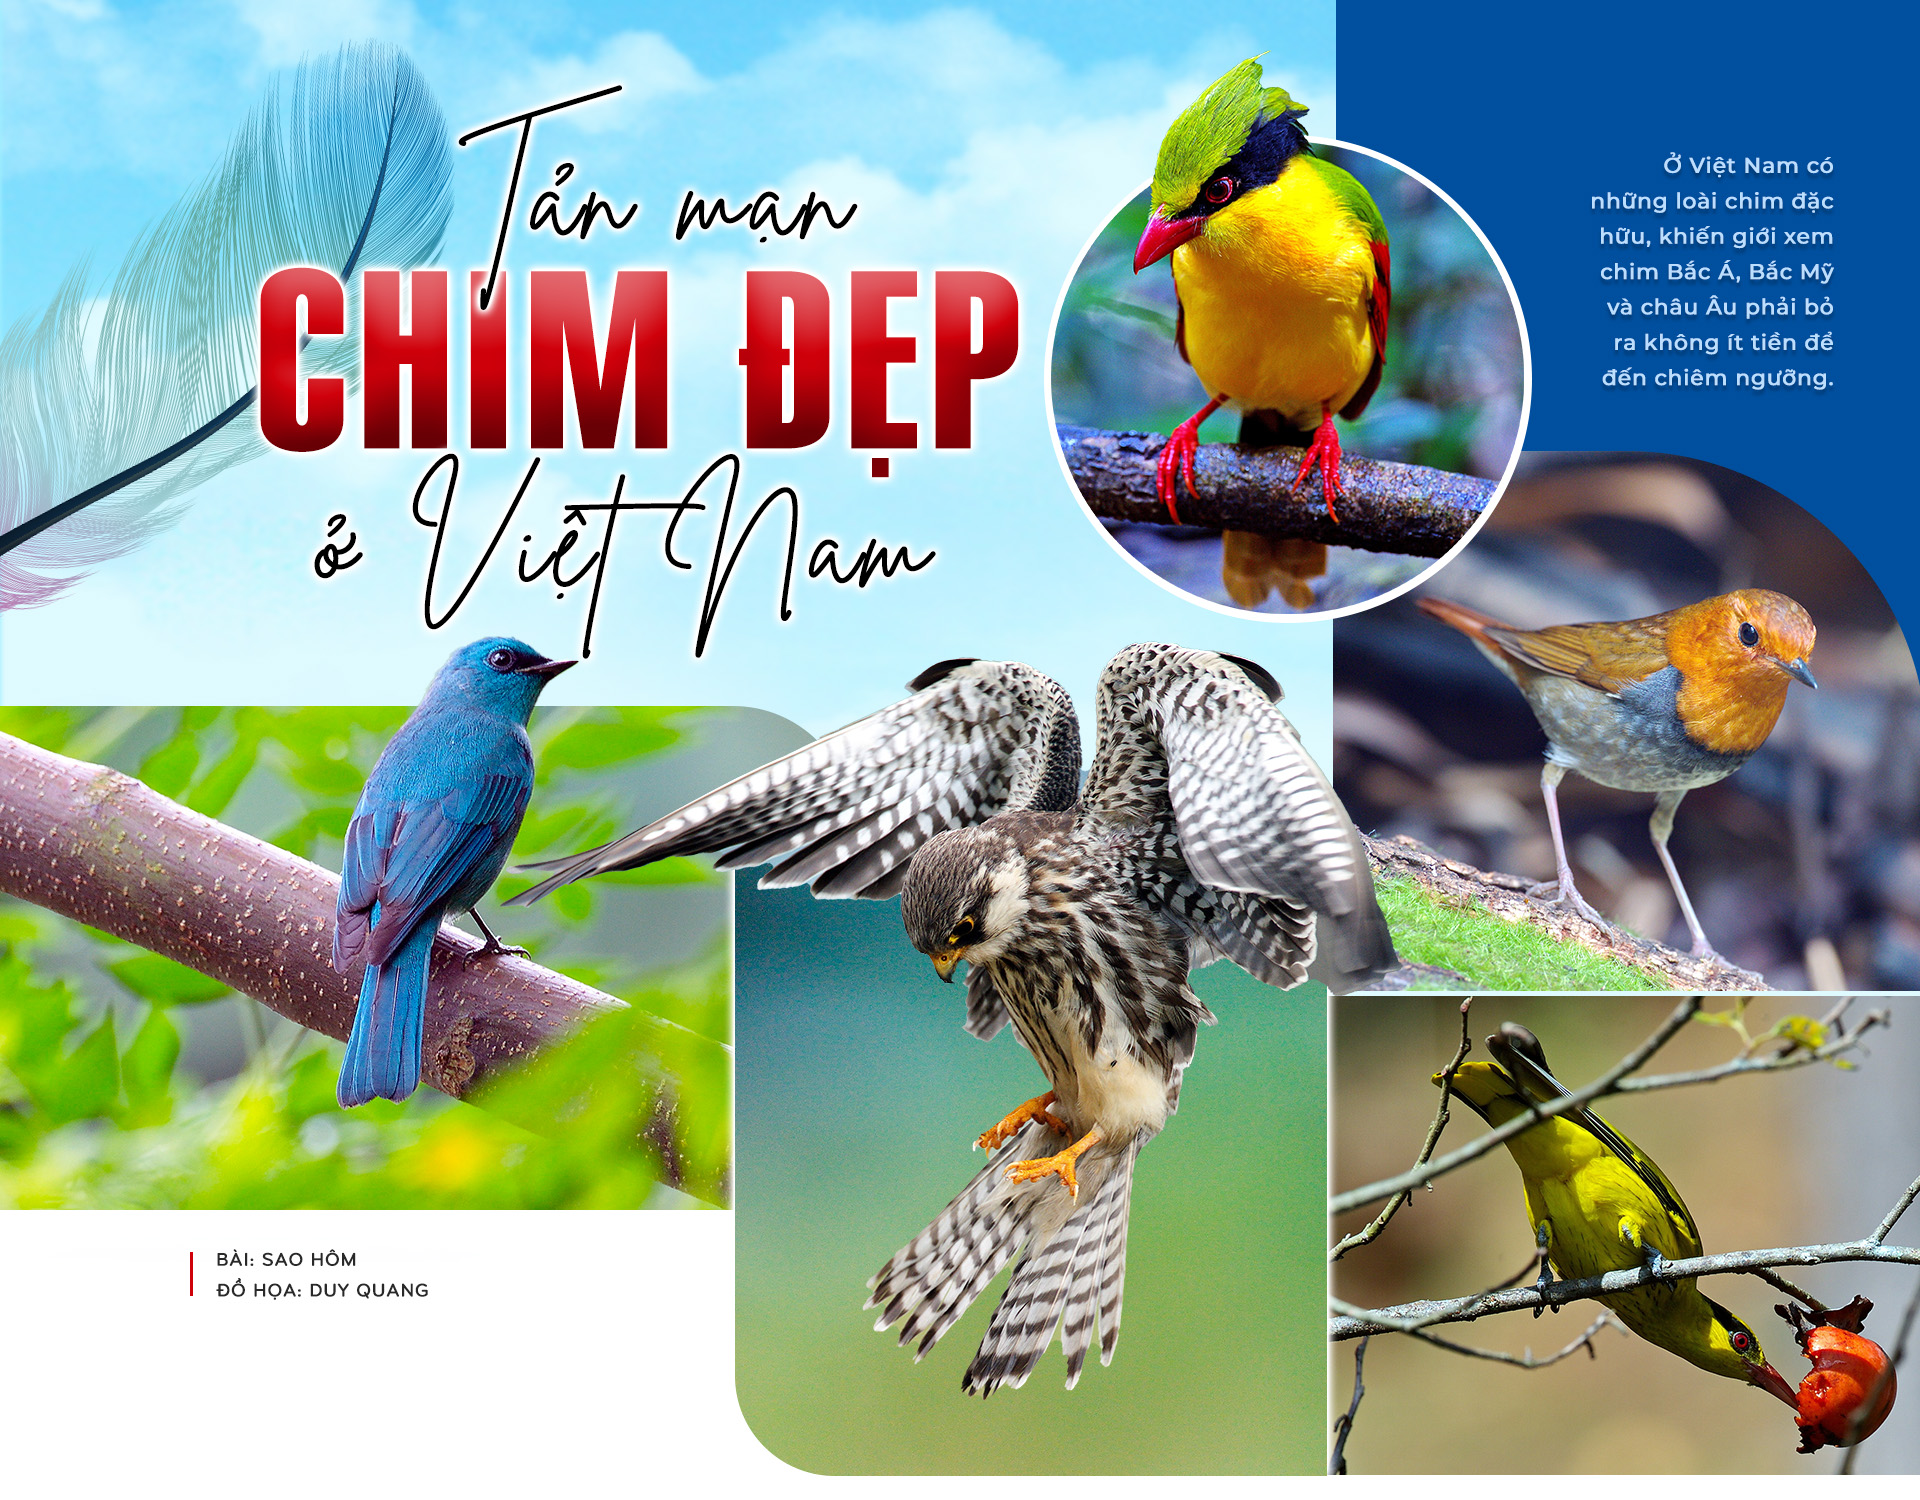 Top 13 loài chim độc đáo ở Việt Nam